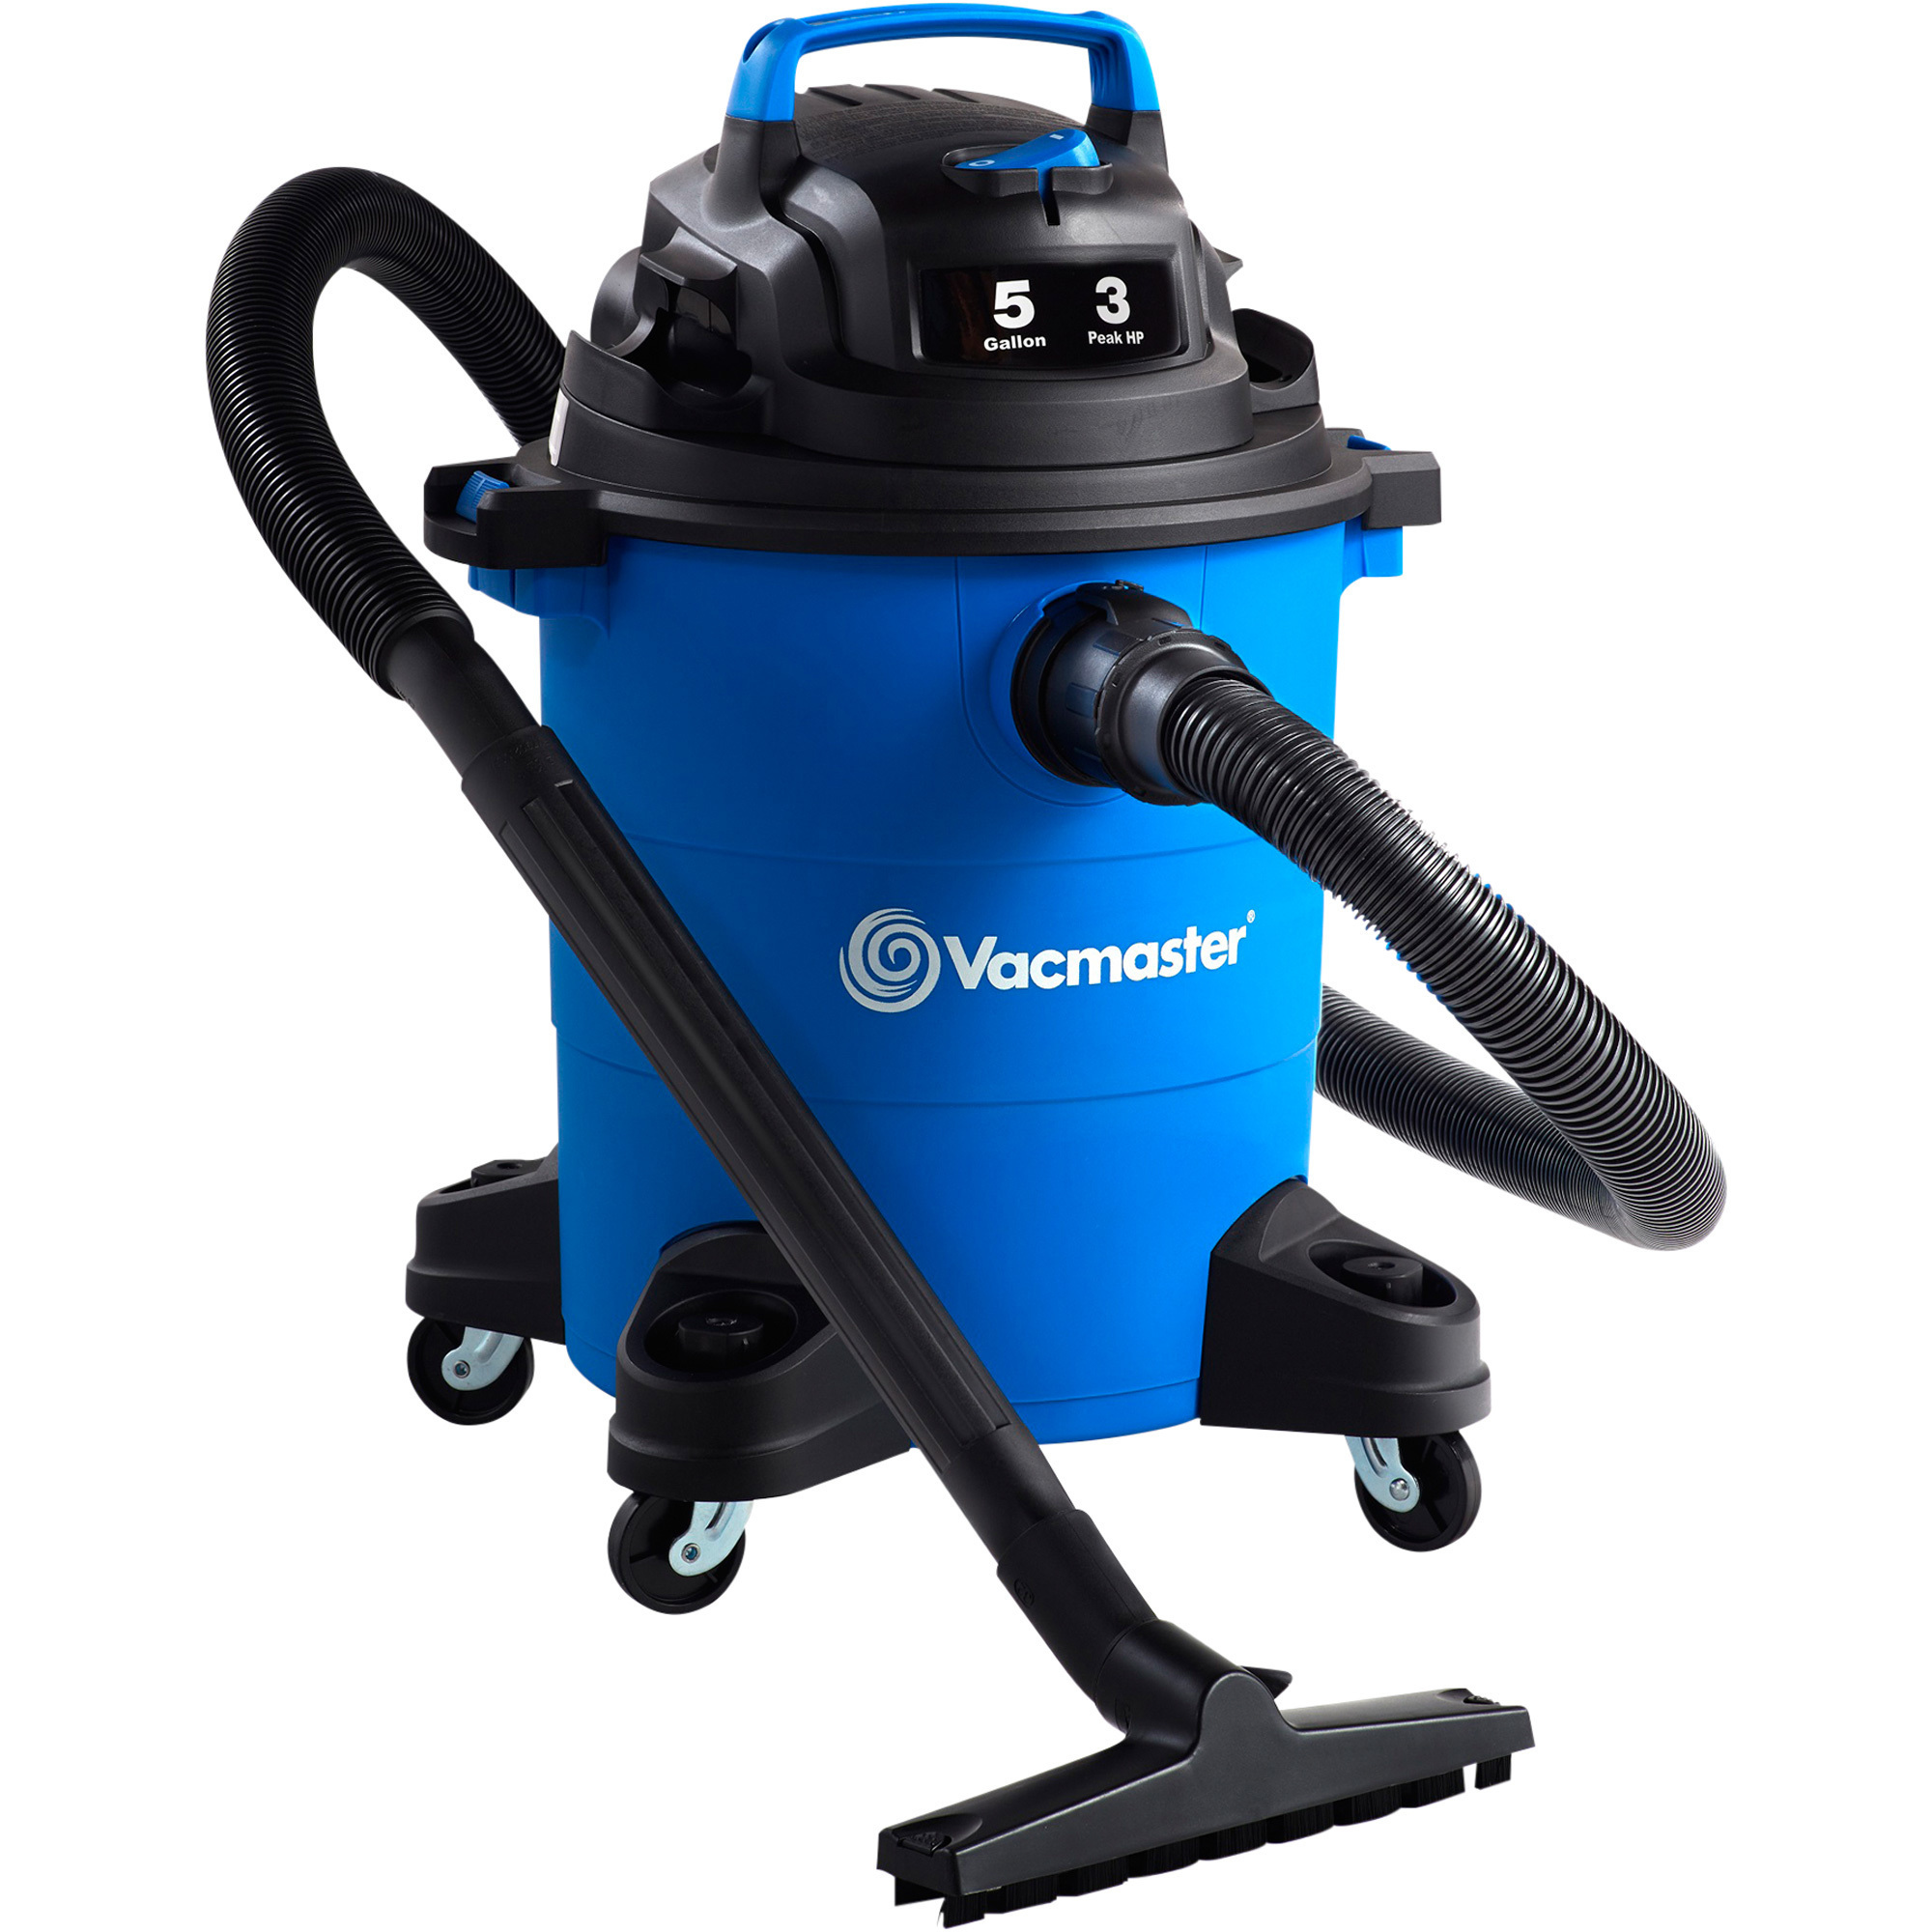 Vacmaster 2-In-1 Wet/Dry Vacuum/Blower â 65 CFM, 5-Gallon, 3 Peak HP, Model VOC507PF